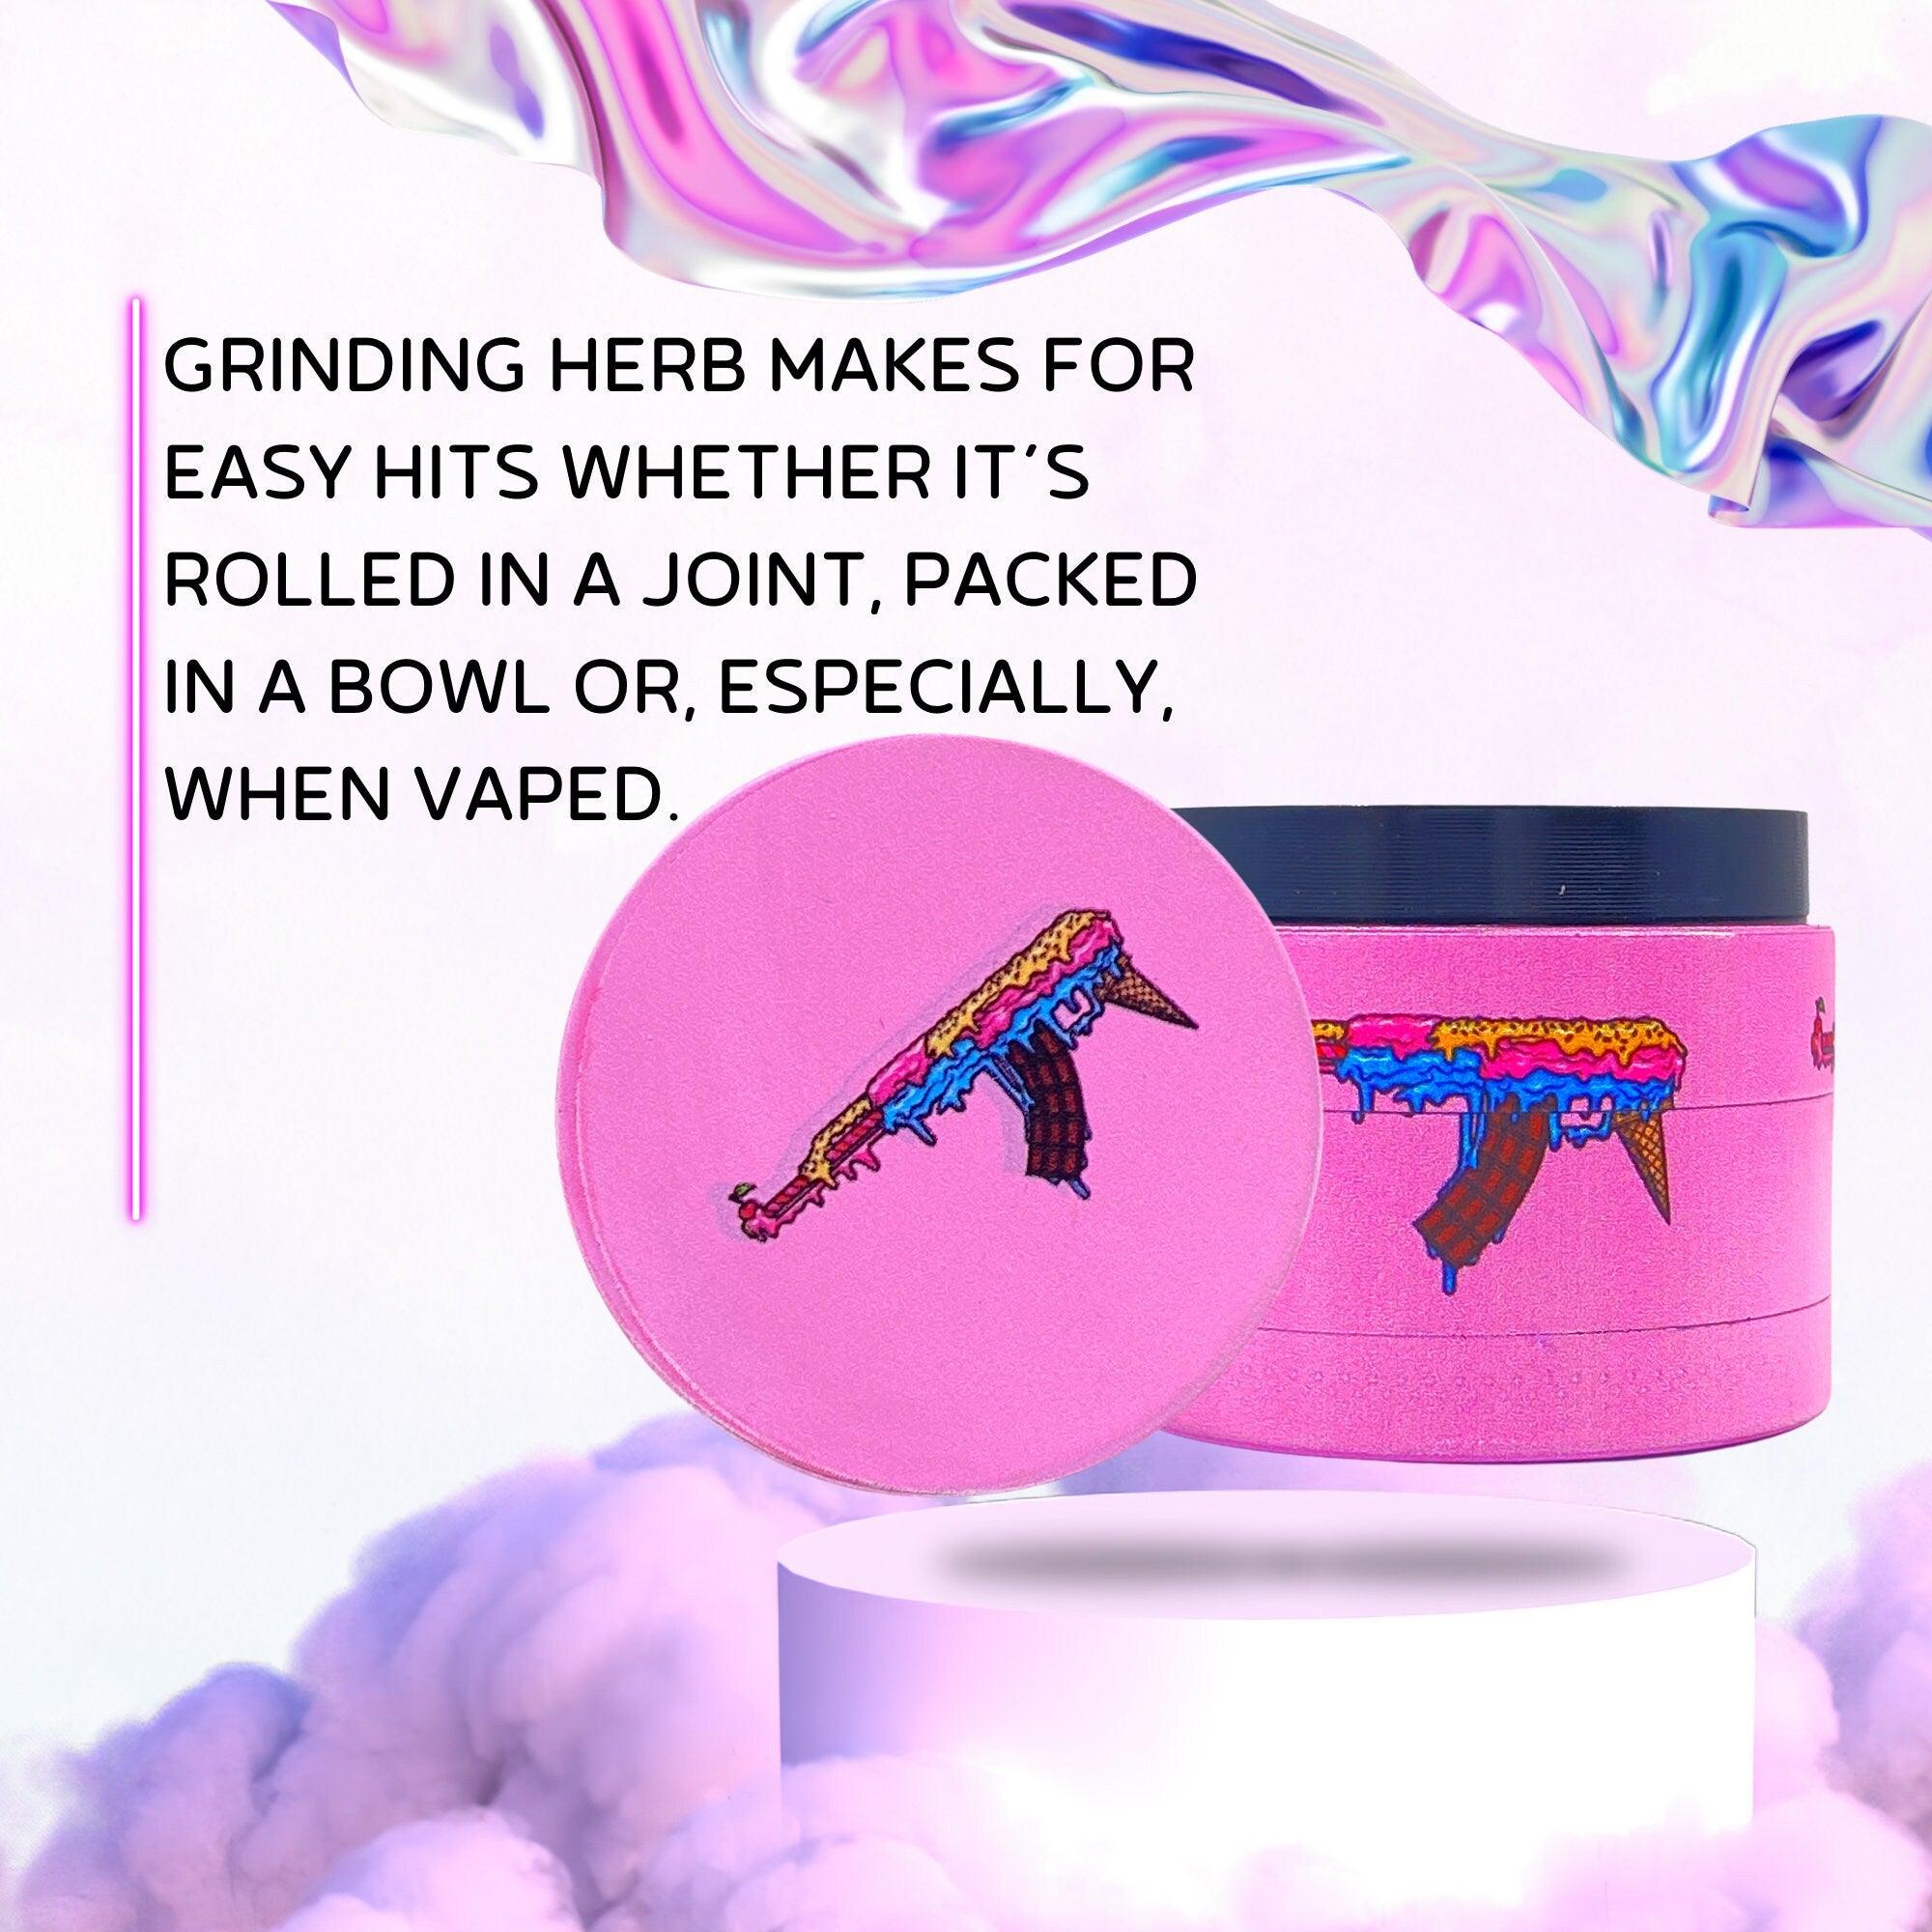 Candy Gun Weed Grinder | Cannabis grinder, weed accessories, 4 piece grinder, metal grinder, Cute Pink grinder, Herb Girly, grinder AK-47